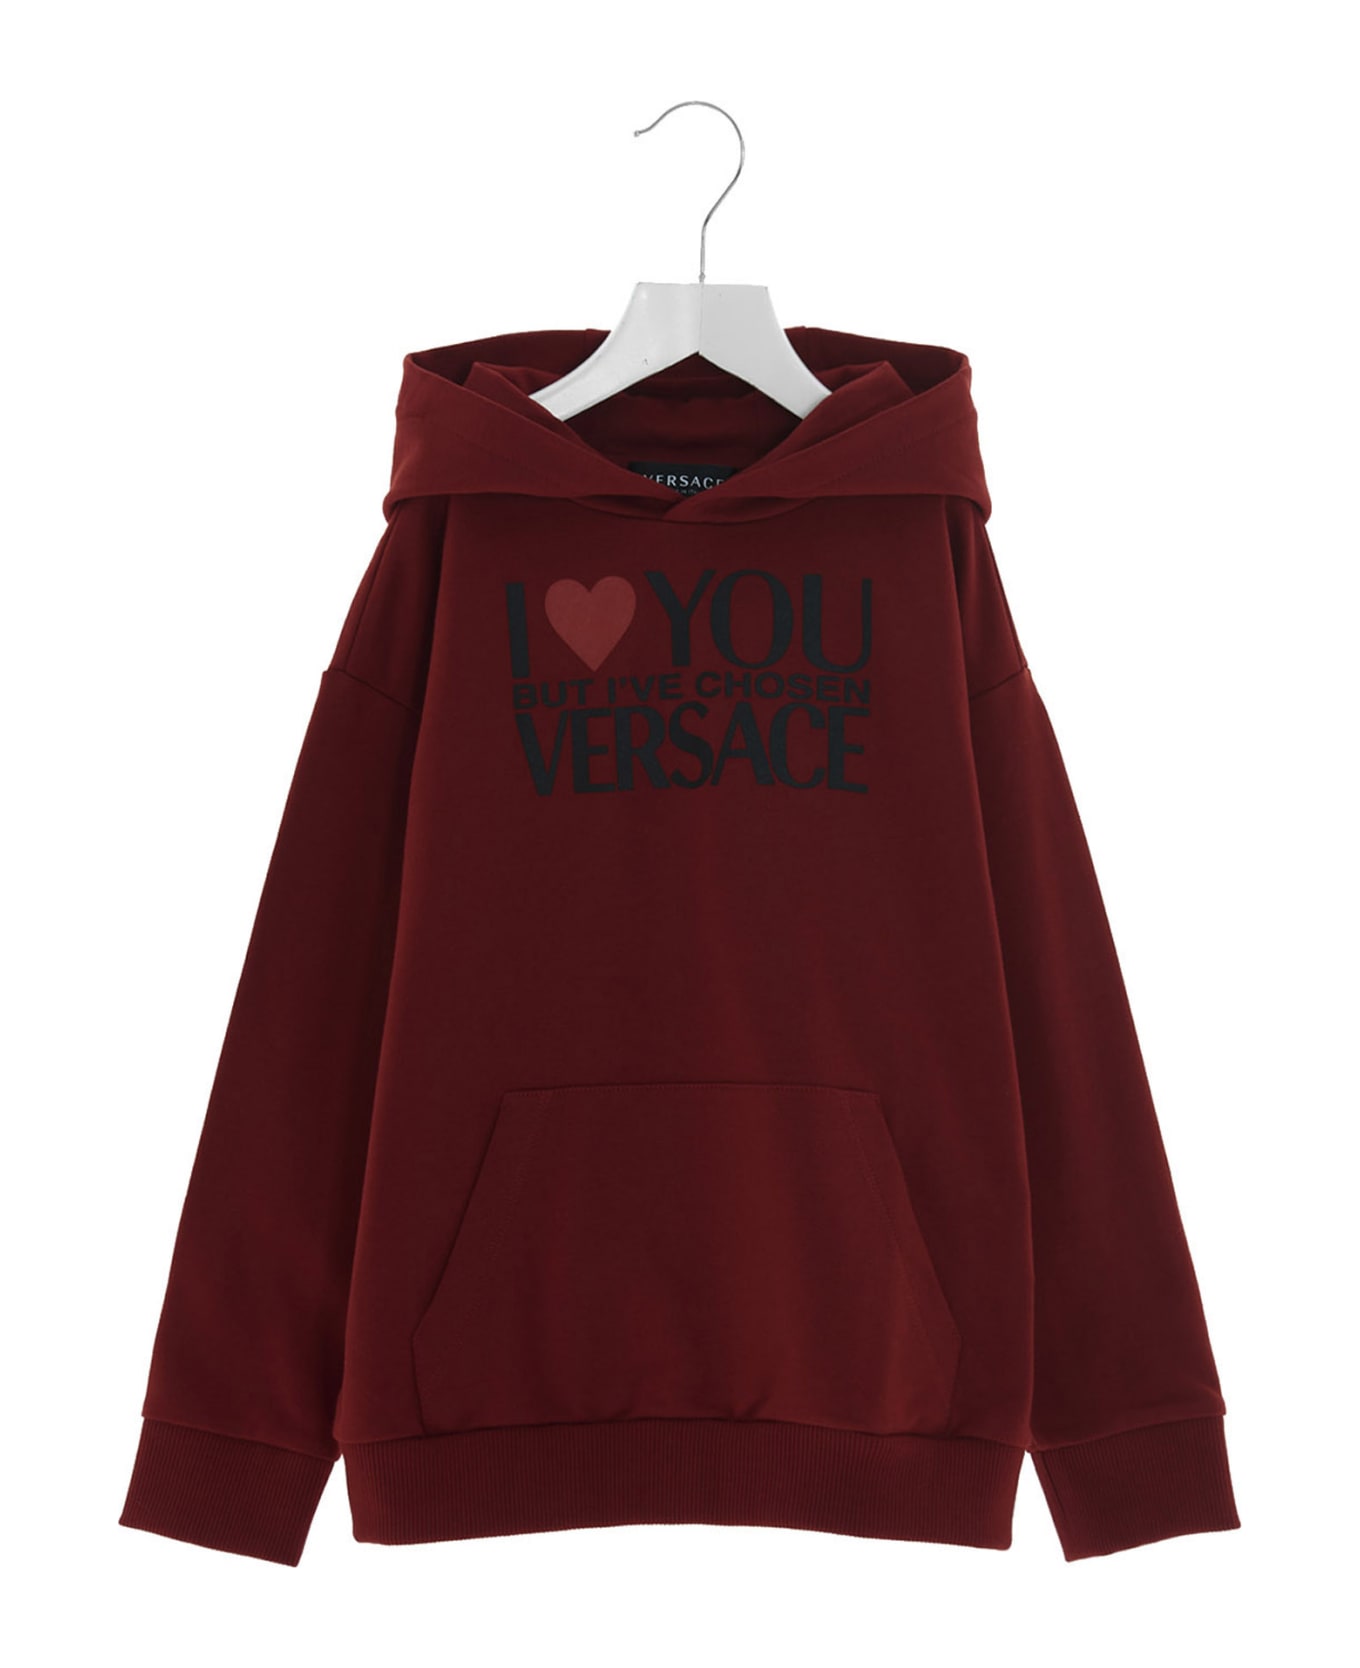 Versace 'i Love Versace' Hoodie - Red